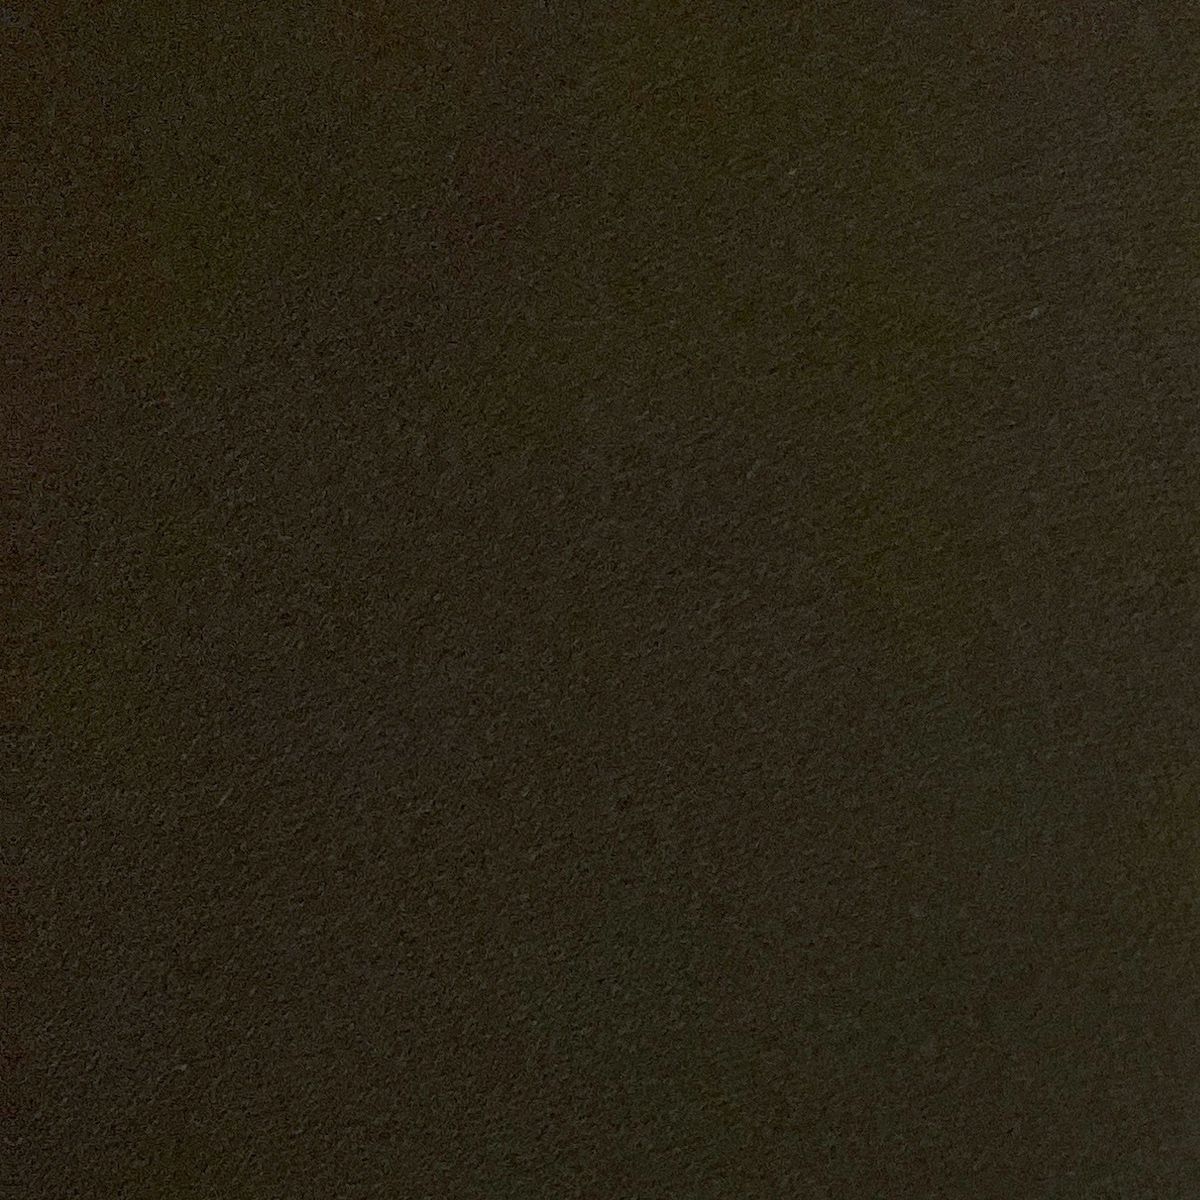 YOKO CHAN(ヨーコ チャン) 七分袖カットソー サイズ36 S レディース美品 - 黒 クルーネック/パール